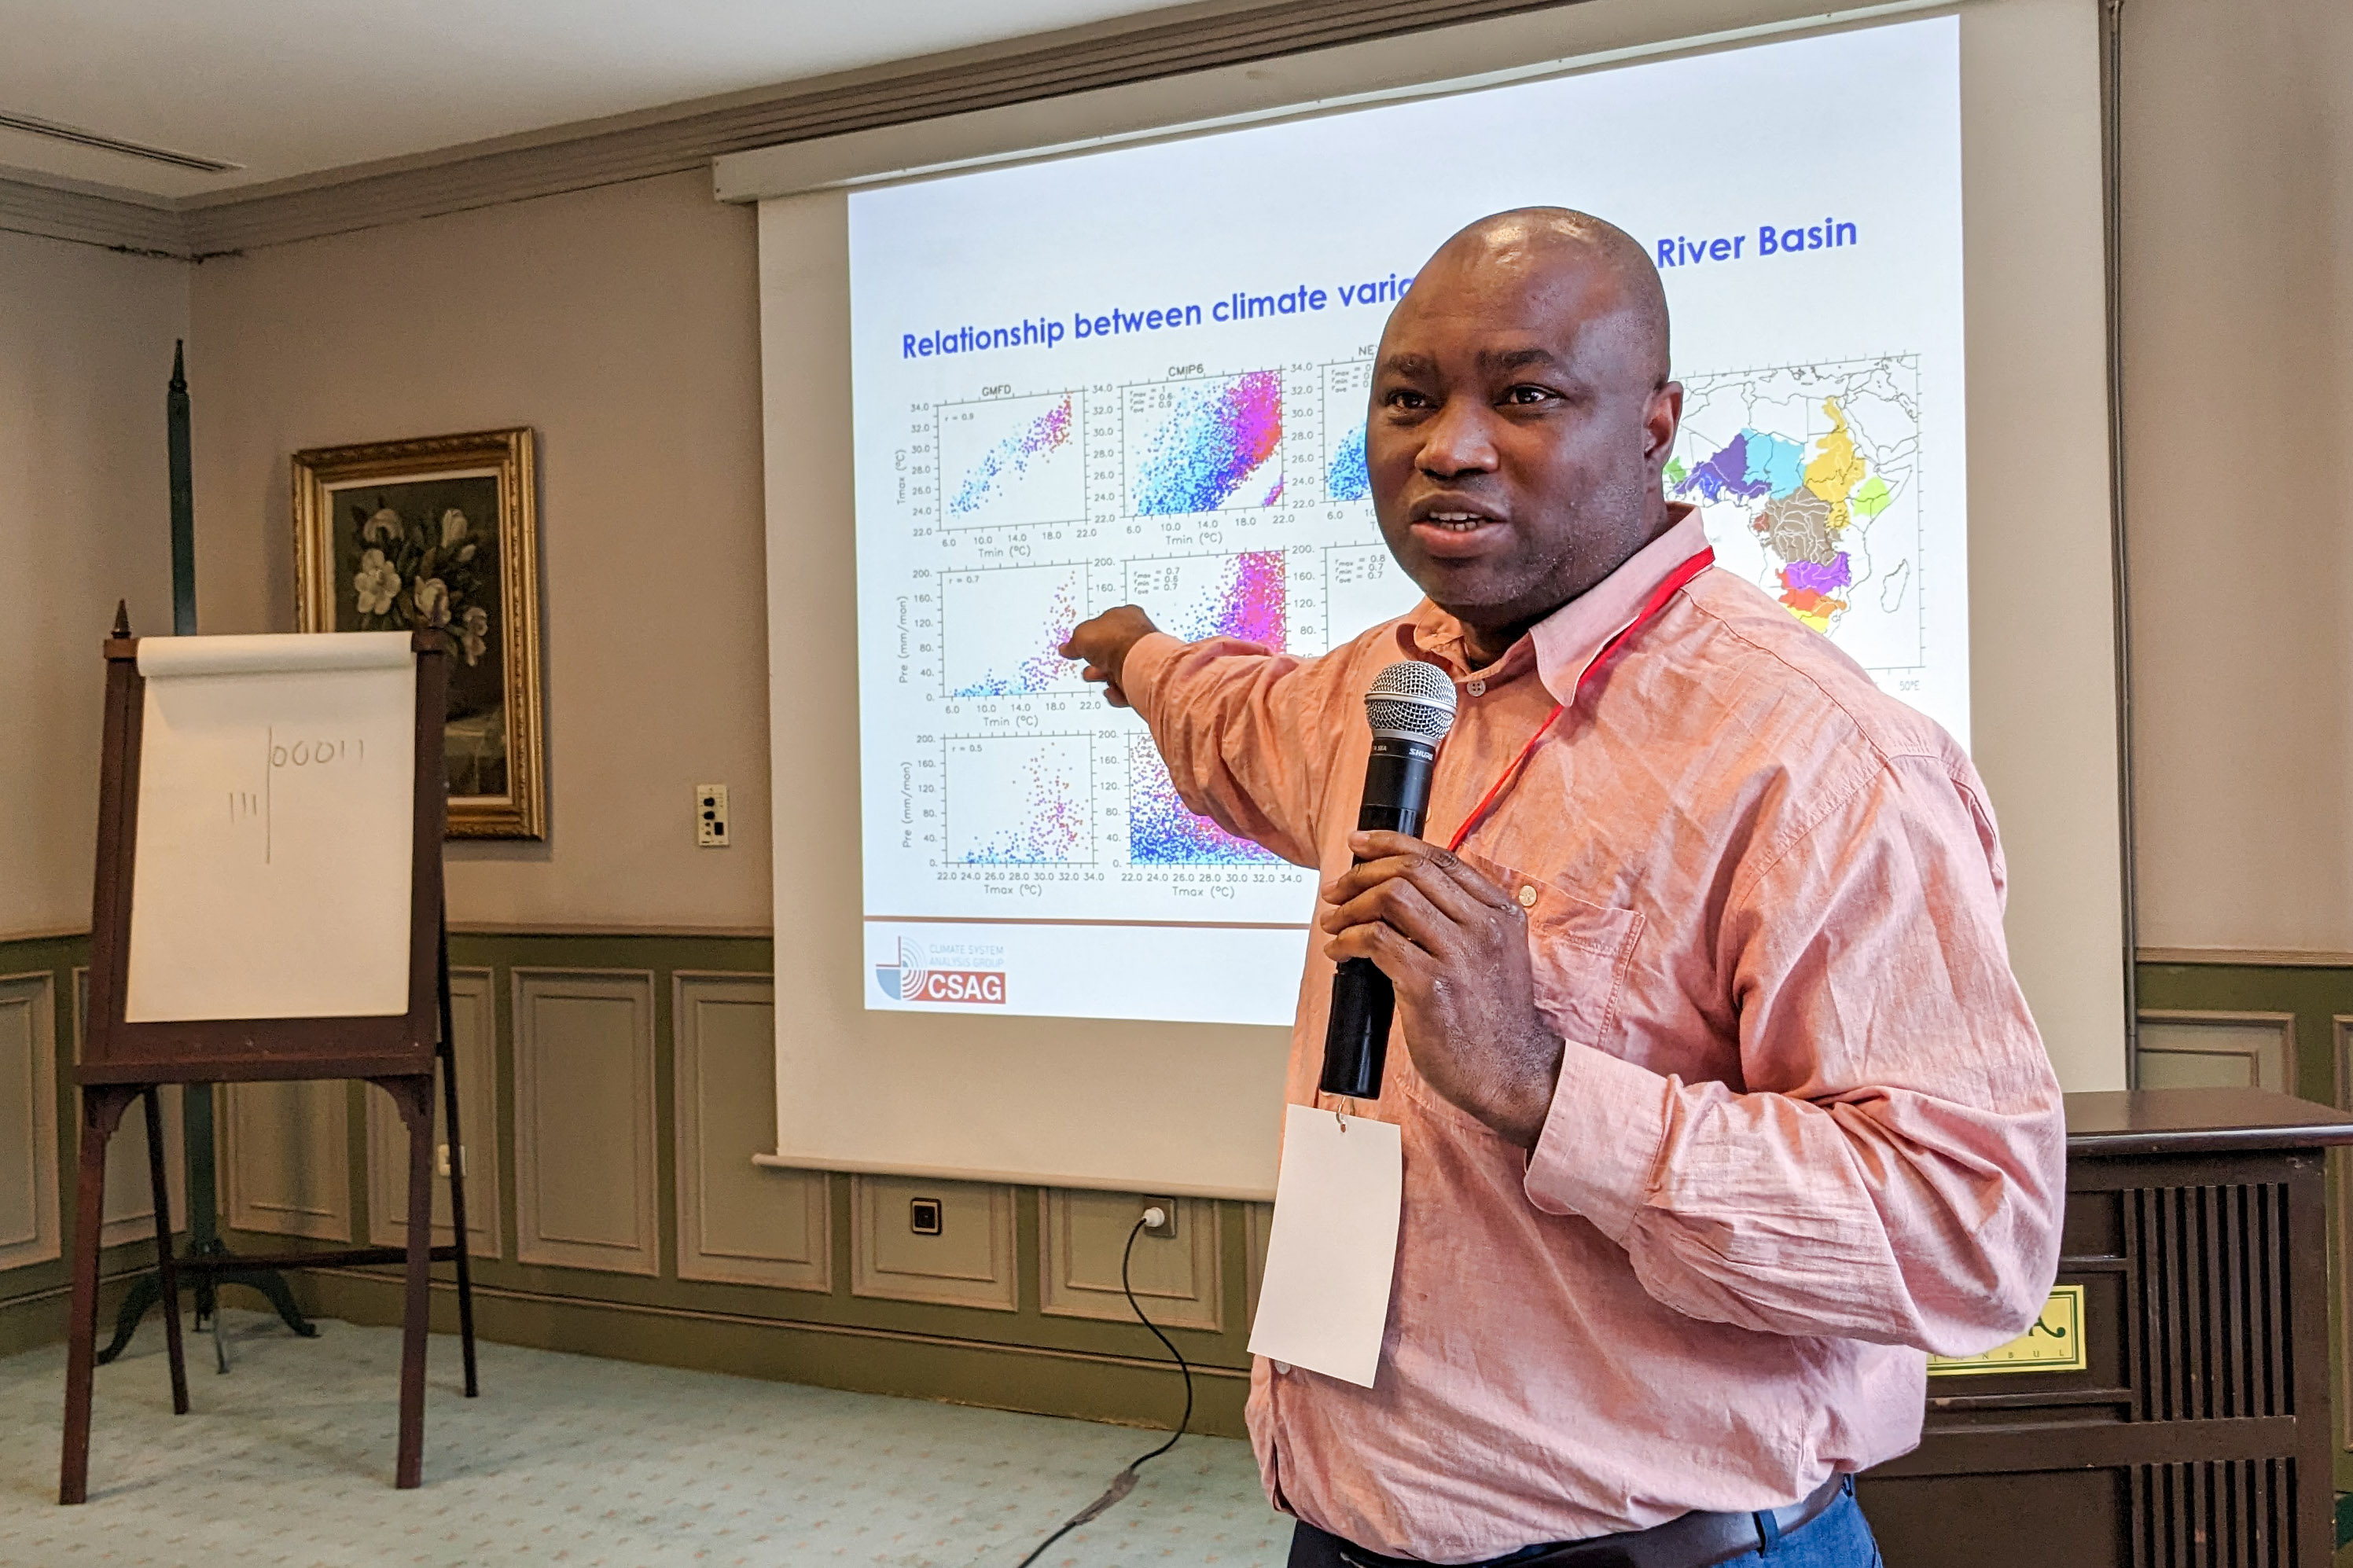 El profesor Abiodun sostiene un micrófono y señala las estadísticas climáticas proyectadas en la pantalla detrás de él.